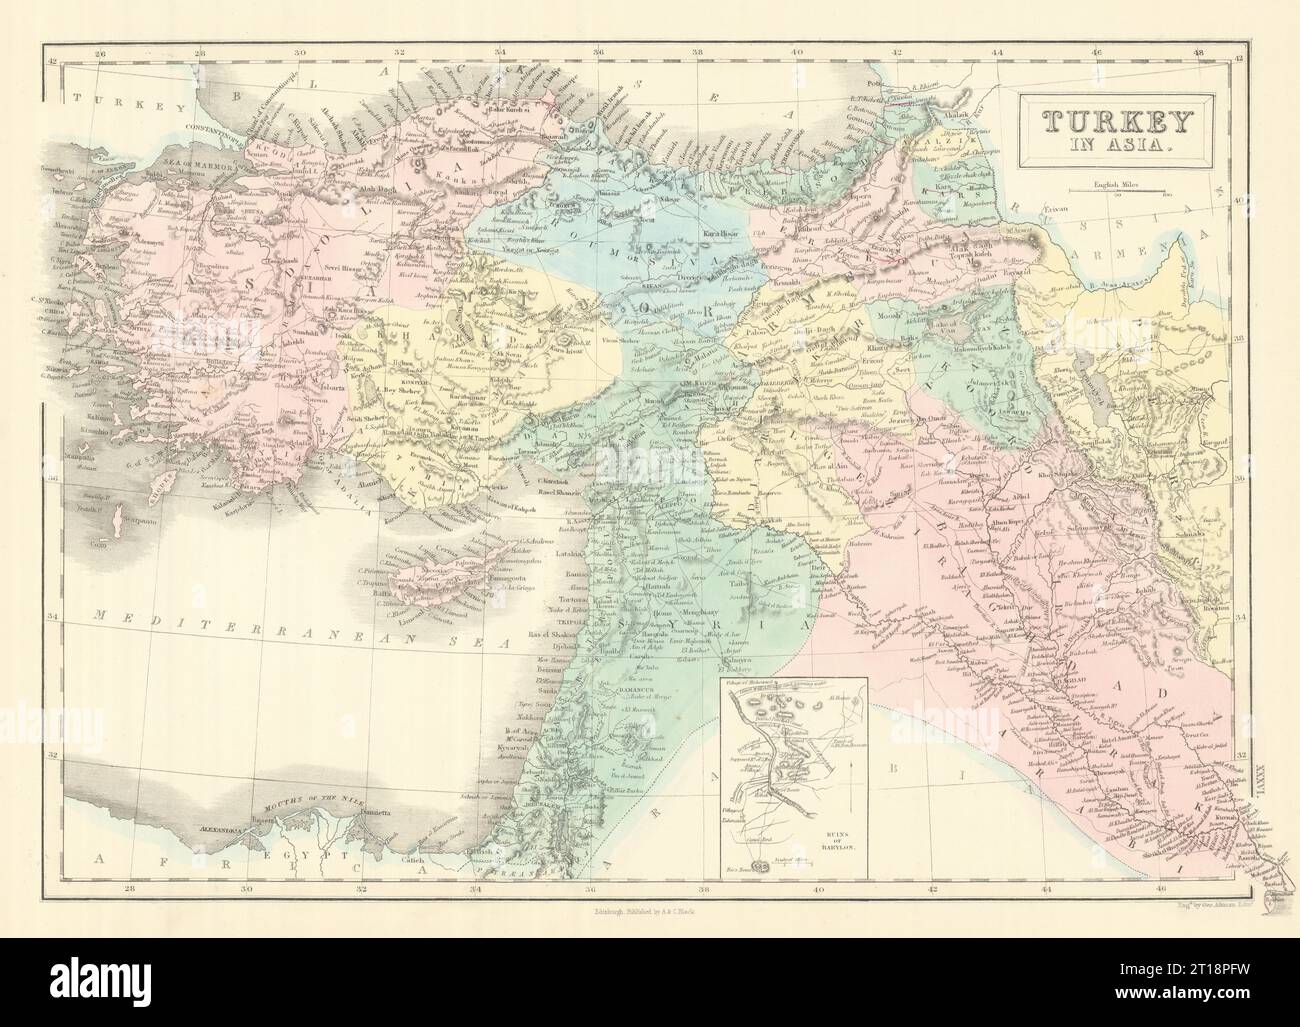 Türkei in Asien. Eingebaute Ruinen von Babylon. Levante Irak. GEORGE AIKMAN 1854 Karte Stockfoto